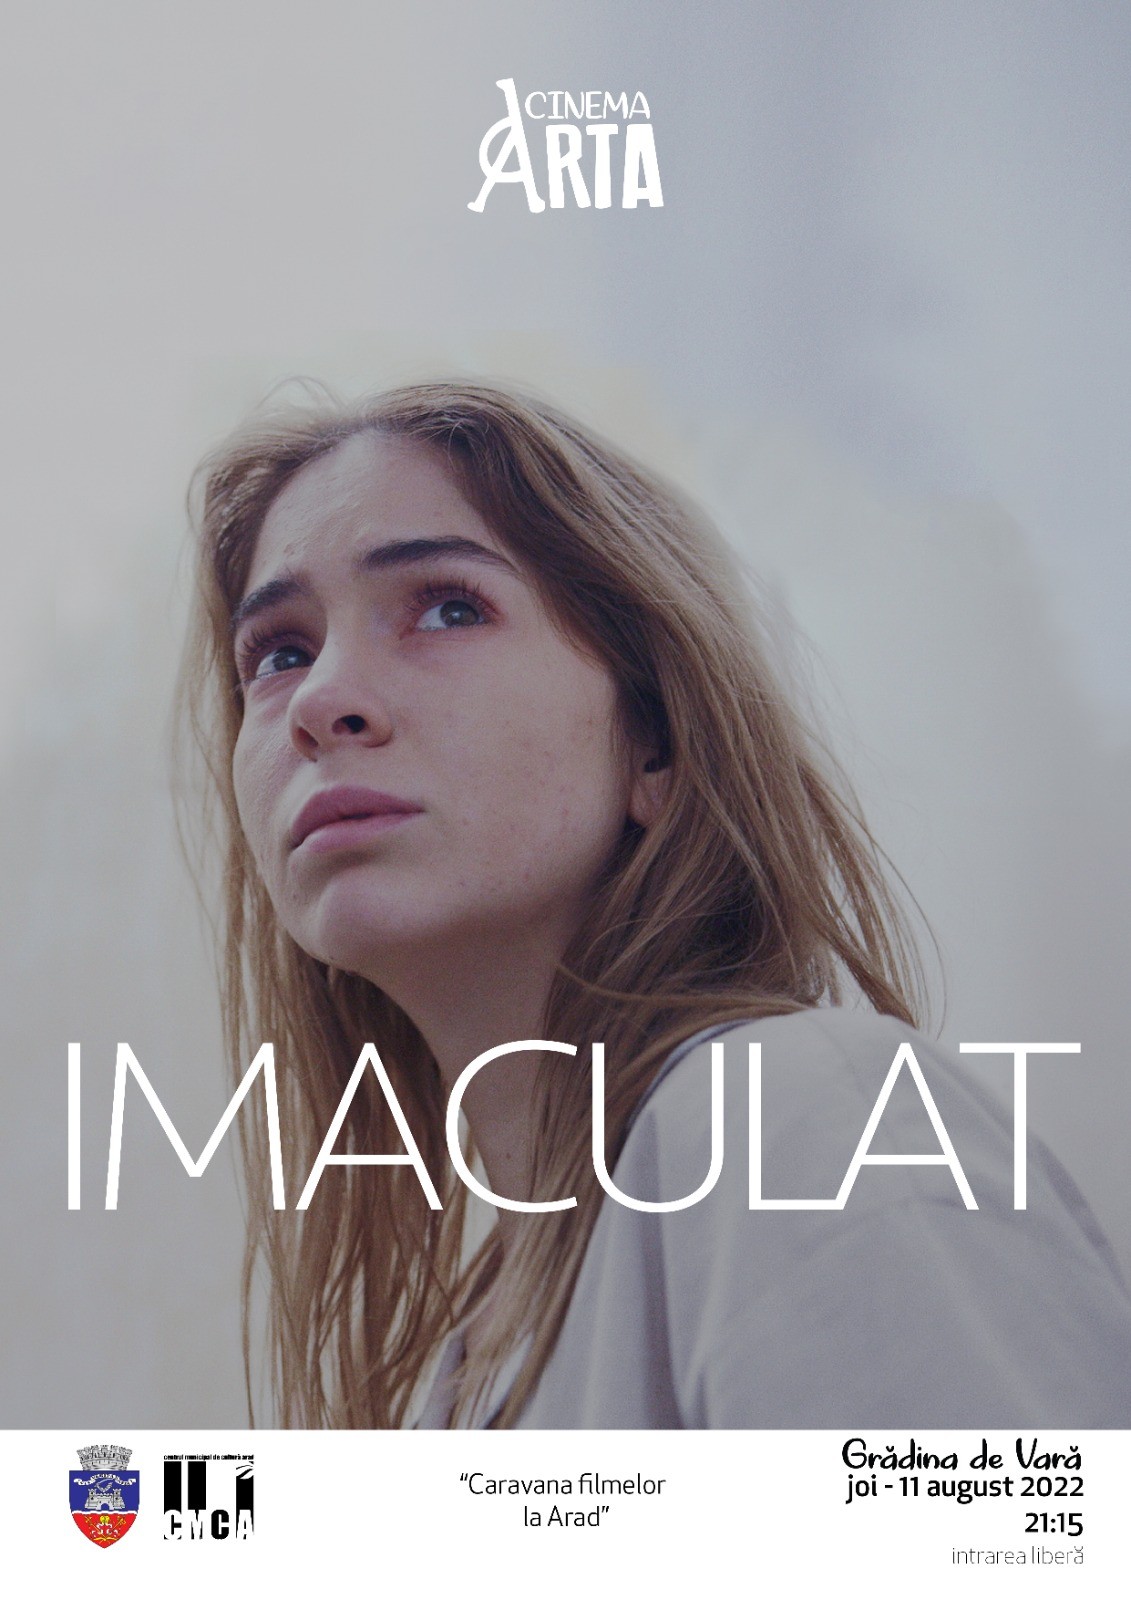 Filmul „Imaculat“, proiectat în premieră la Arad, în grădina de vară de la Cinematograful Arta